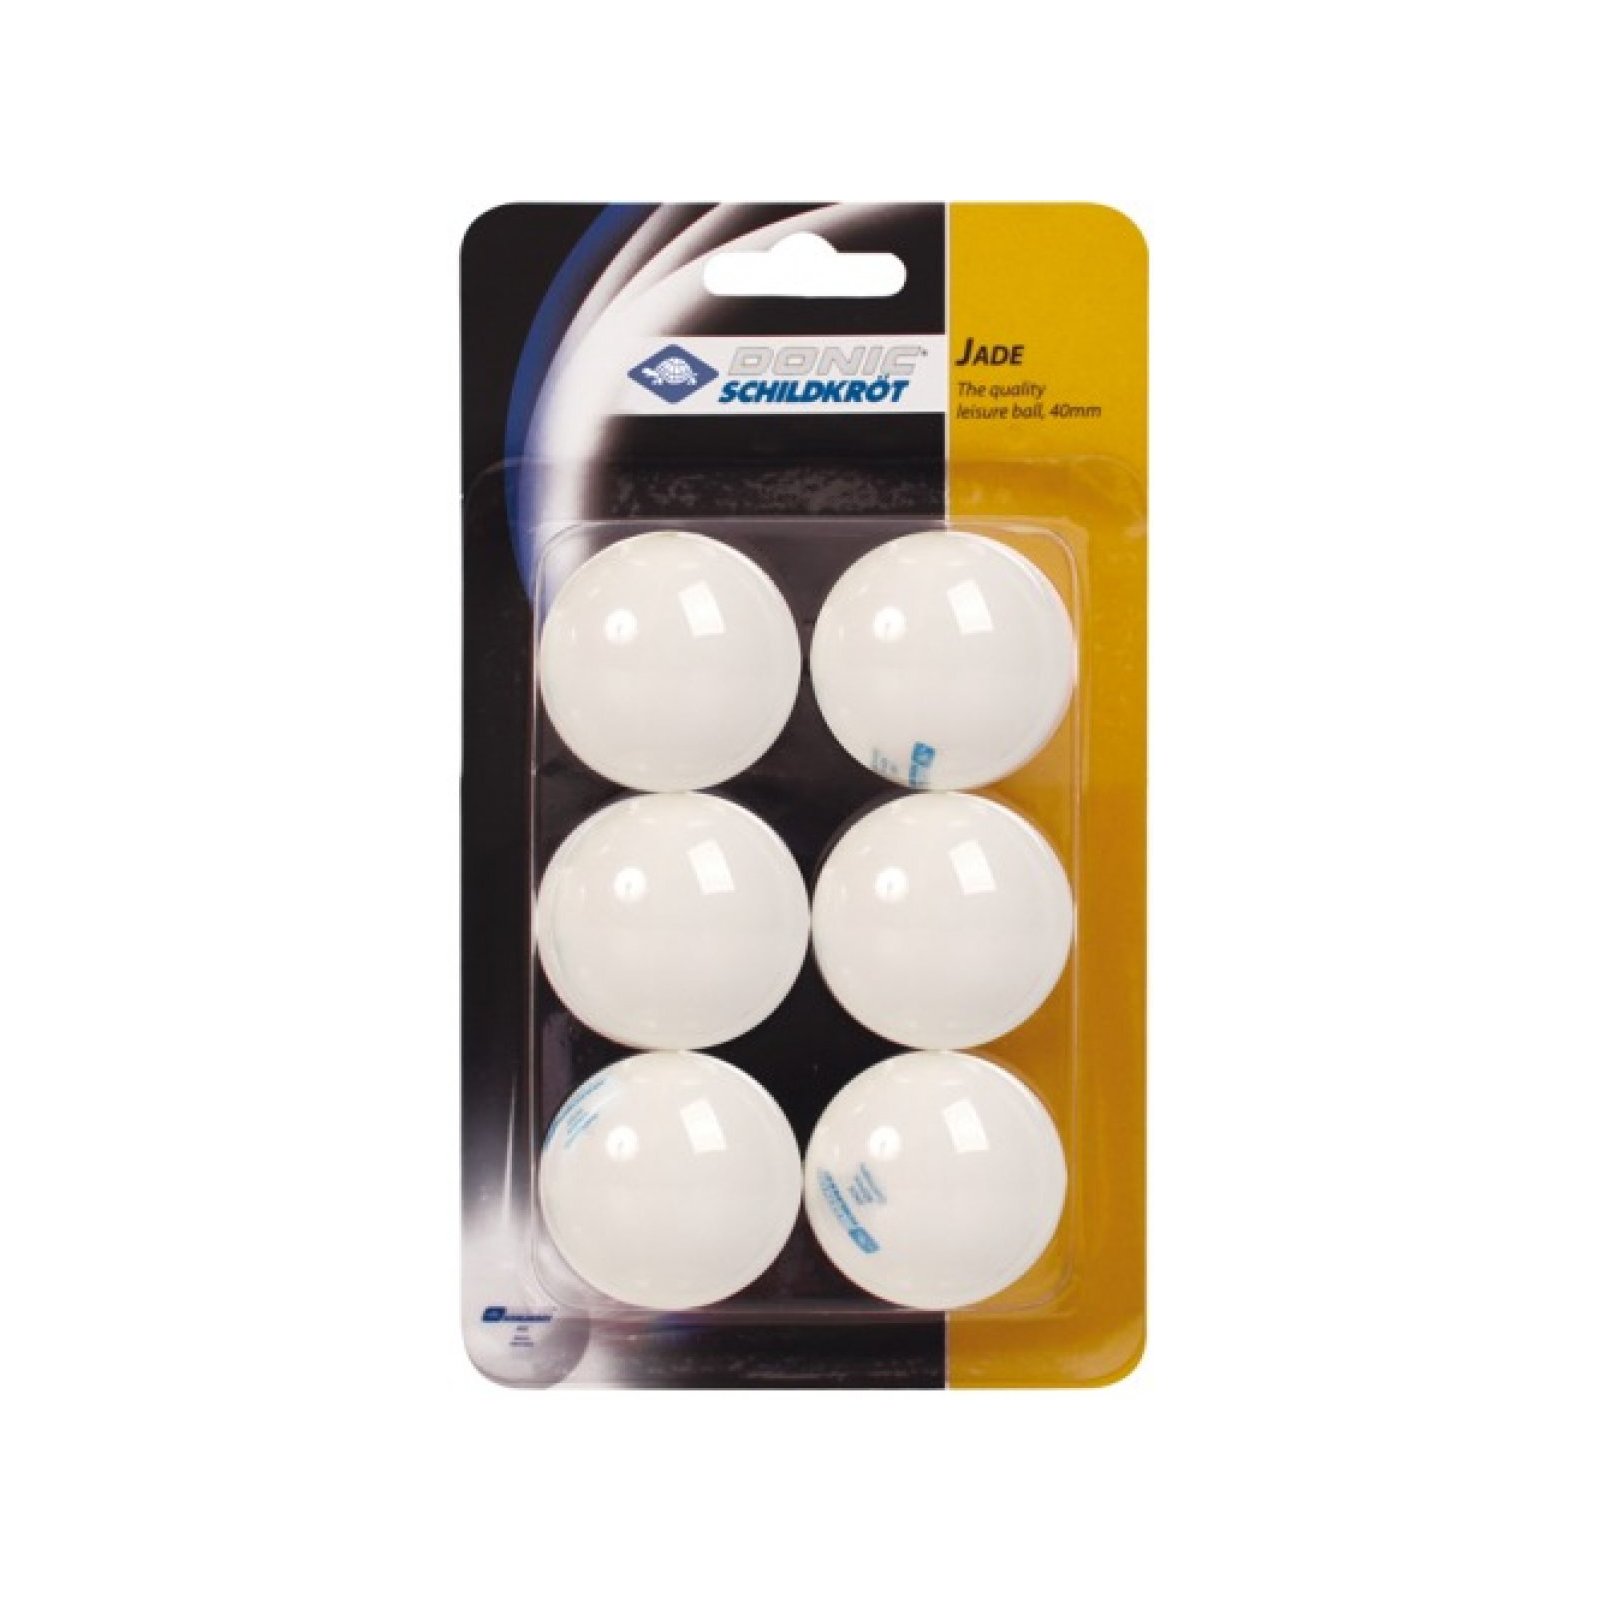 Schildkröt - Tischtennis 6er Jade Ball, weiß 40 mm